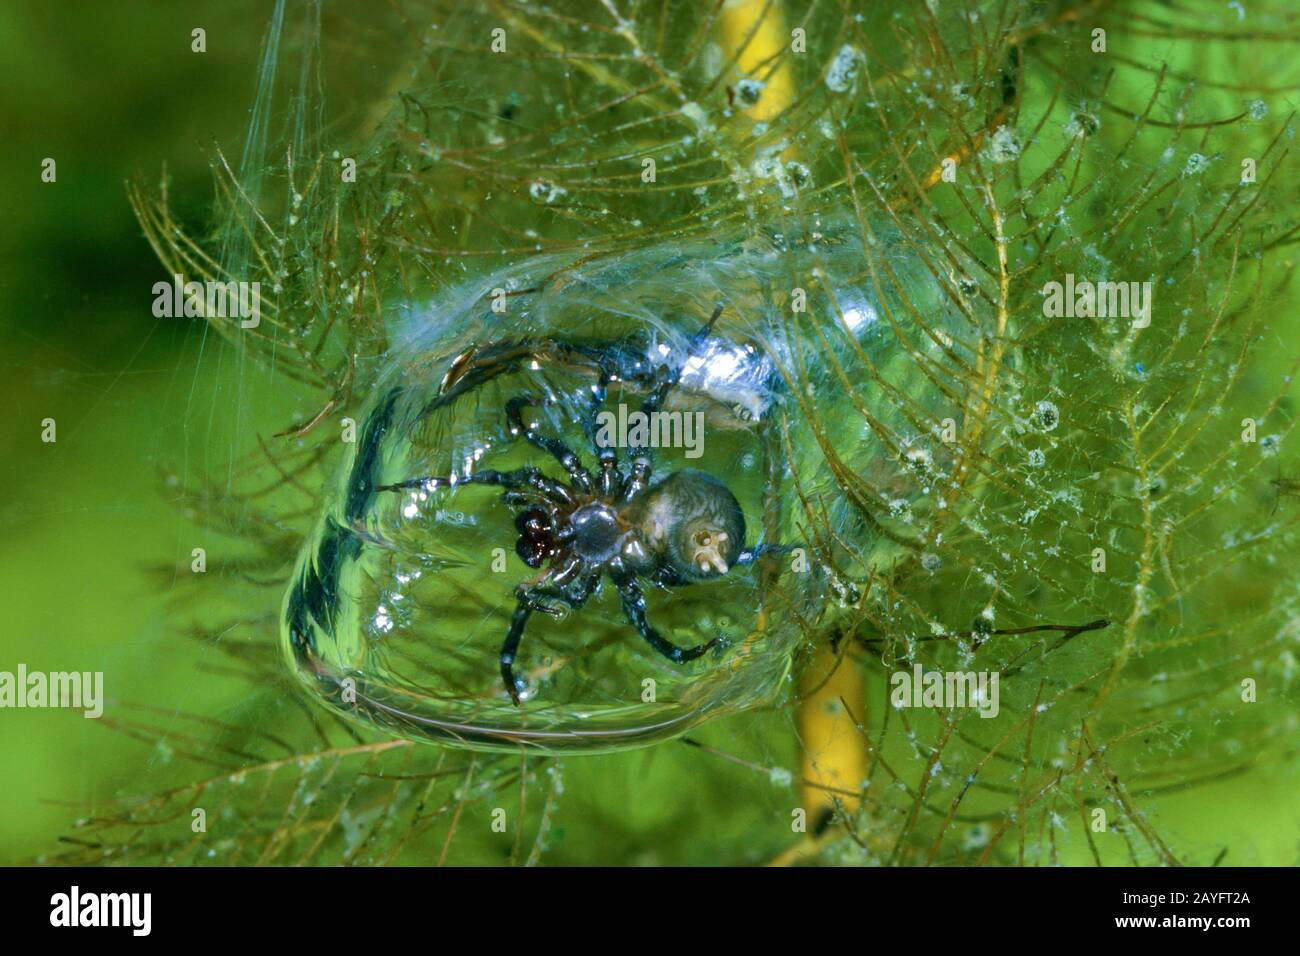 Araignée européenne de l'eau (Argyroneta Aquatica), avec cloche de plongée, bulle d'air sous l'eau, nageur comme proie dans la cloche, Allemagne Banque D'Images